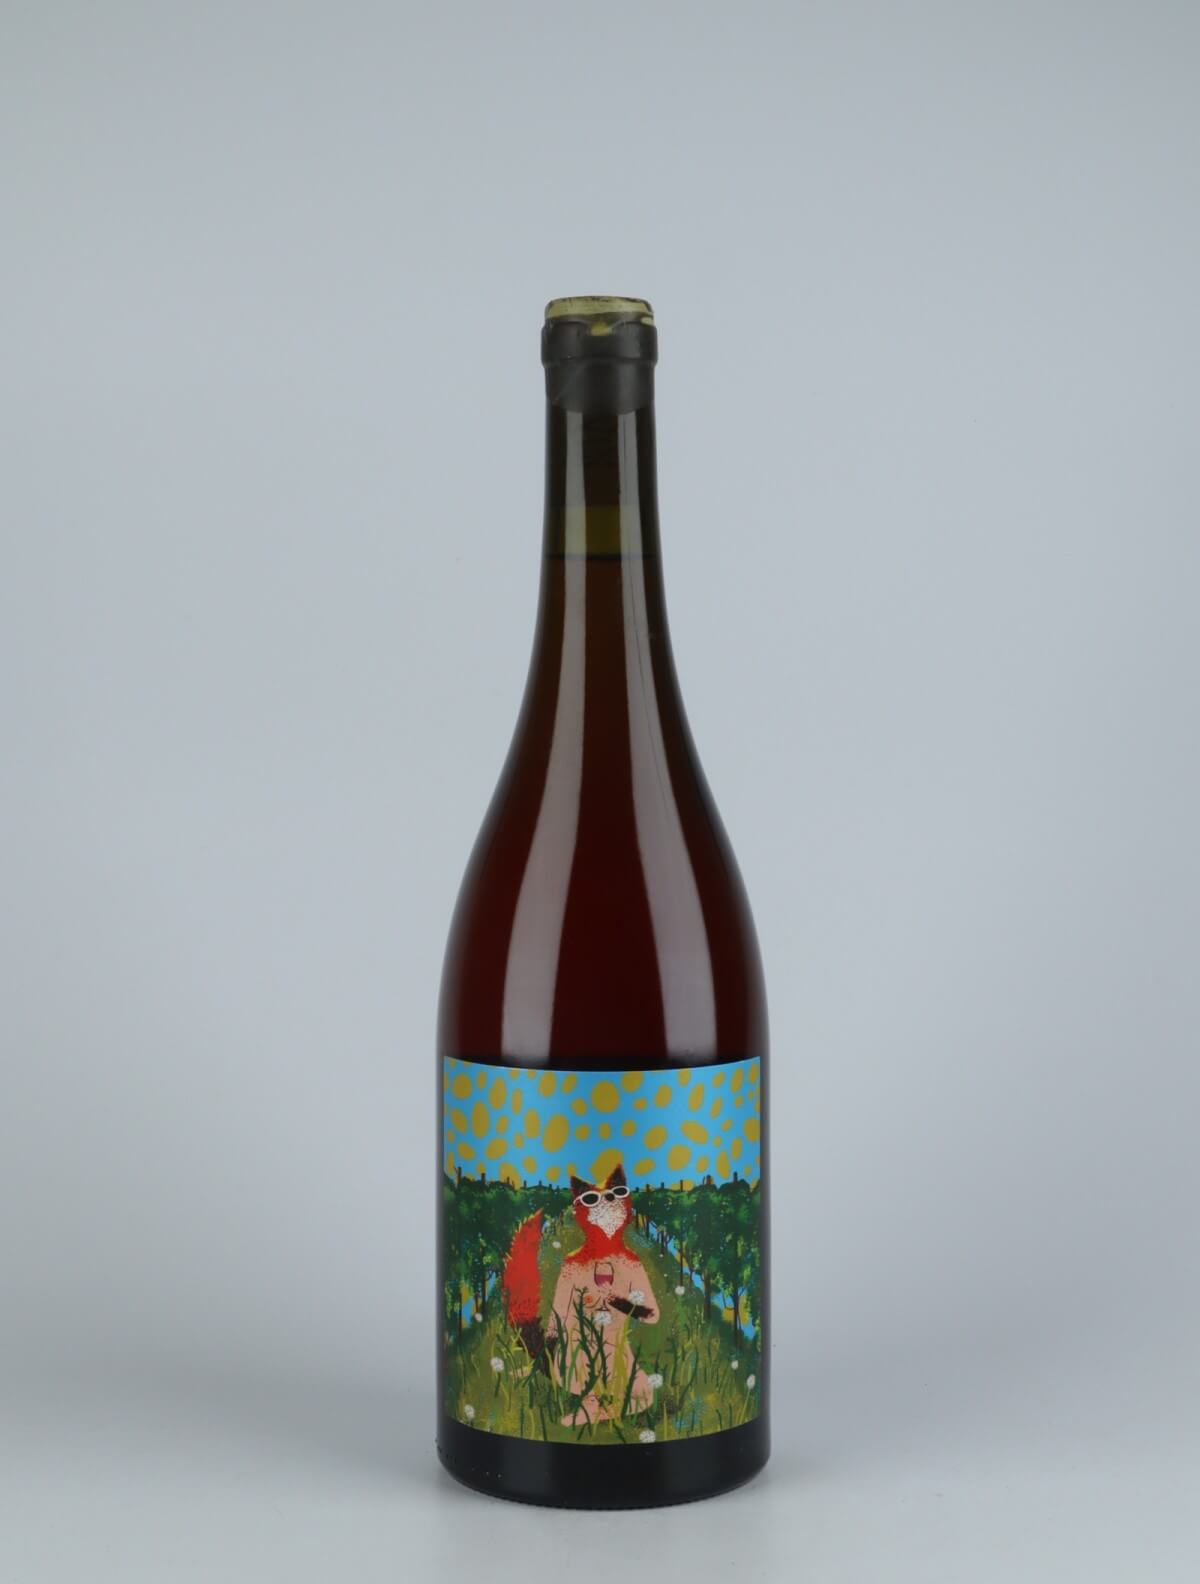 En flaske 2020 Verano Rosé fra Kindeli, Nelson i New Zealand